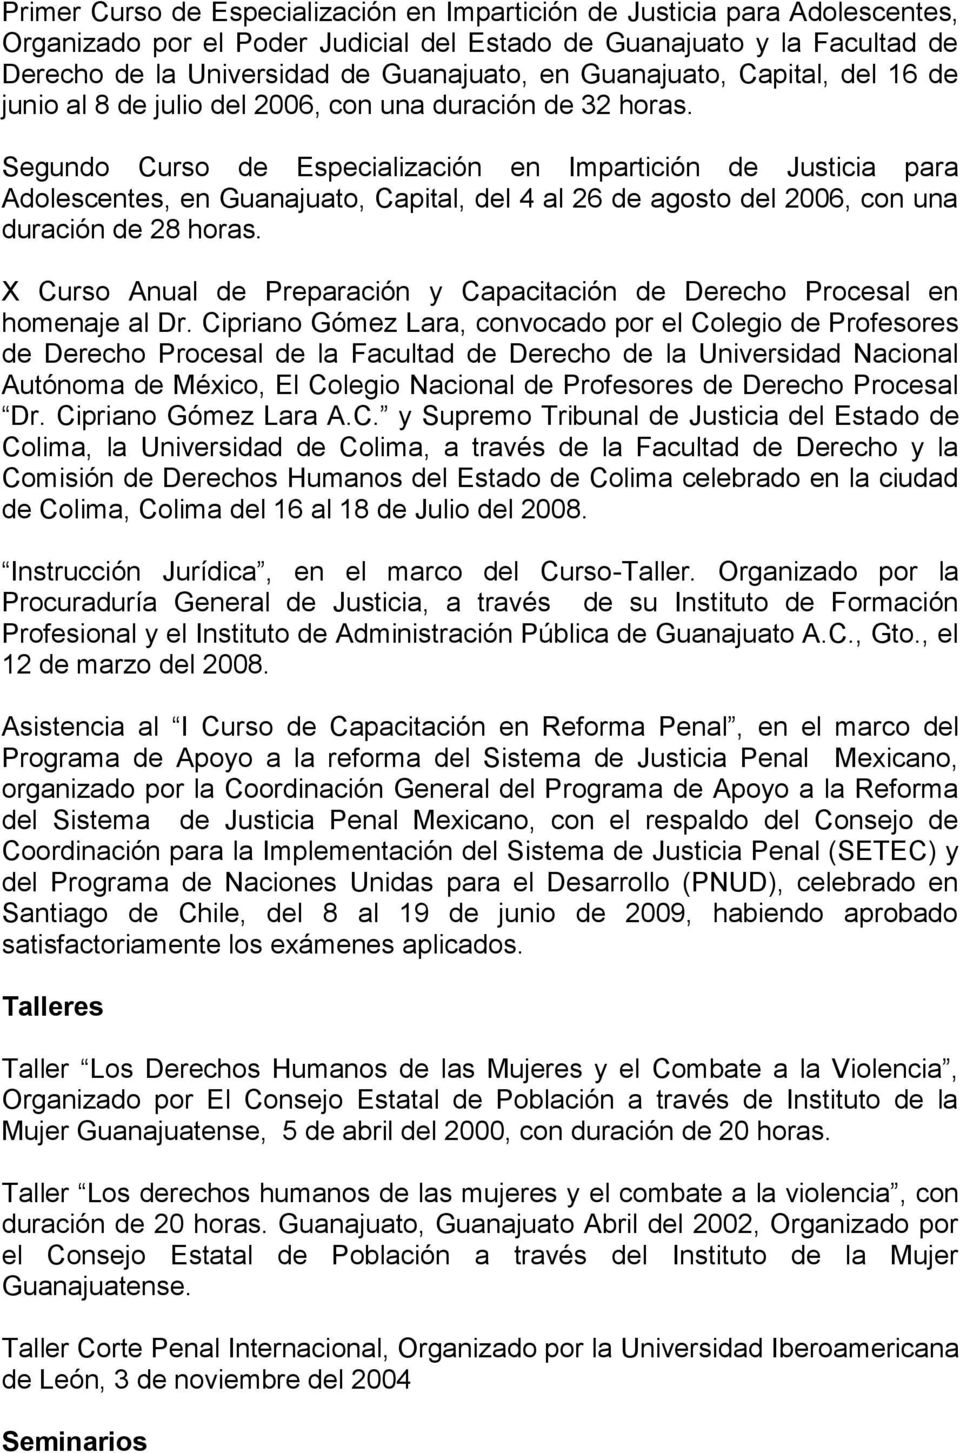 Segundo Curso de Especialización en Impartición de Justicia para Adolescentes, en Guanajuato, Capital, del 4 al 26 de agosto del 2006, con una duración de 28 horas.